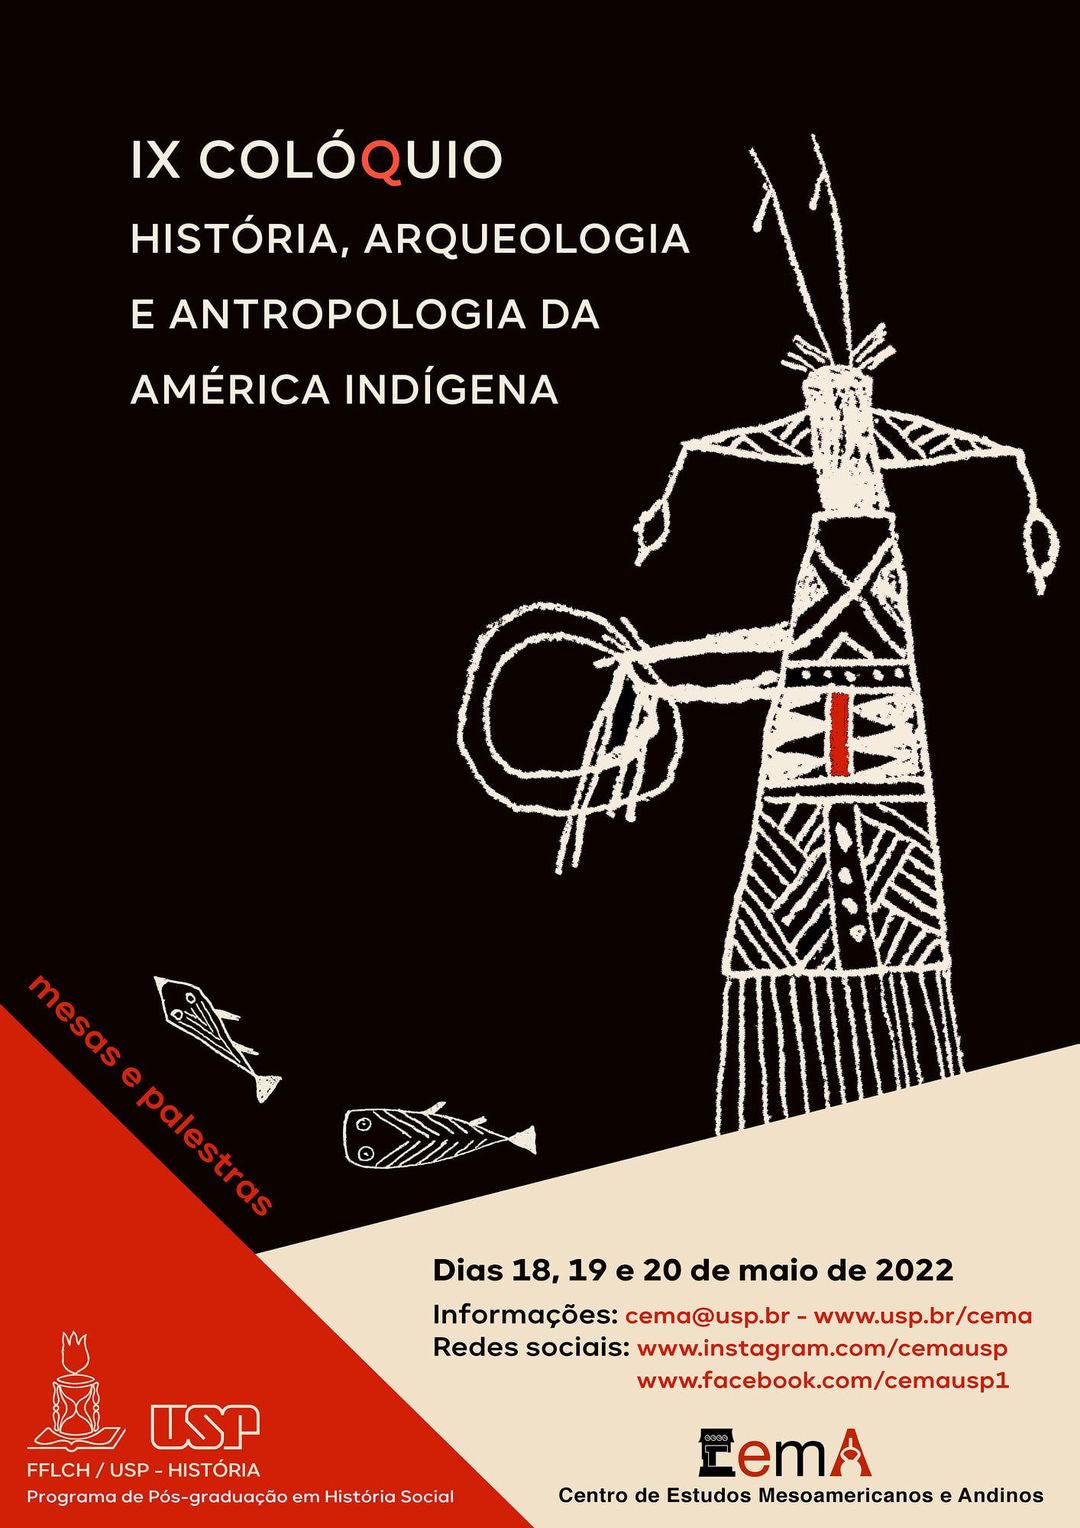 IX Colóquio História, Arqueologia e Antropologia da América Indígena